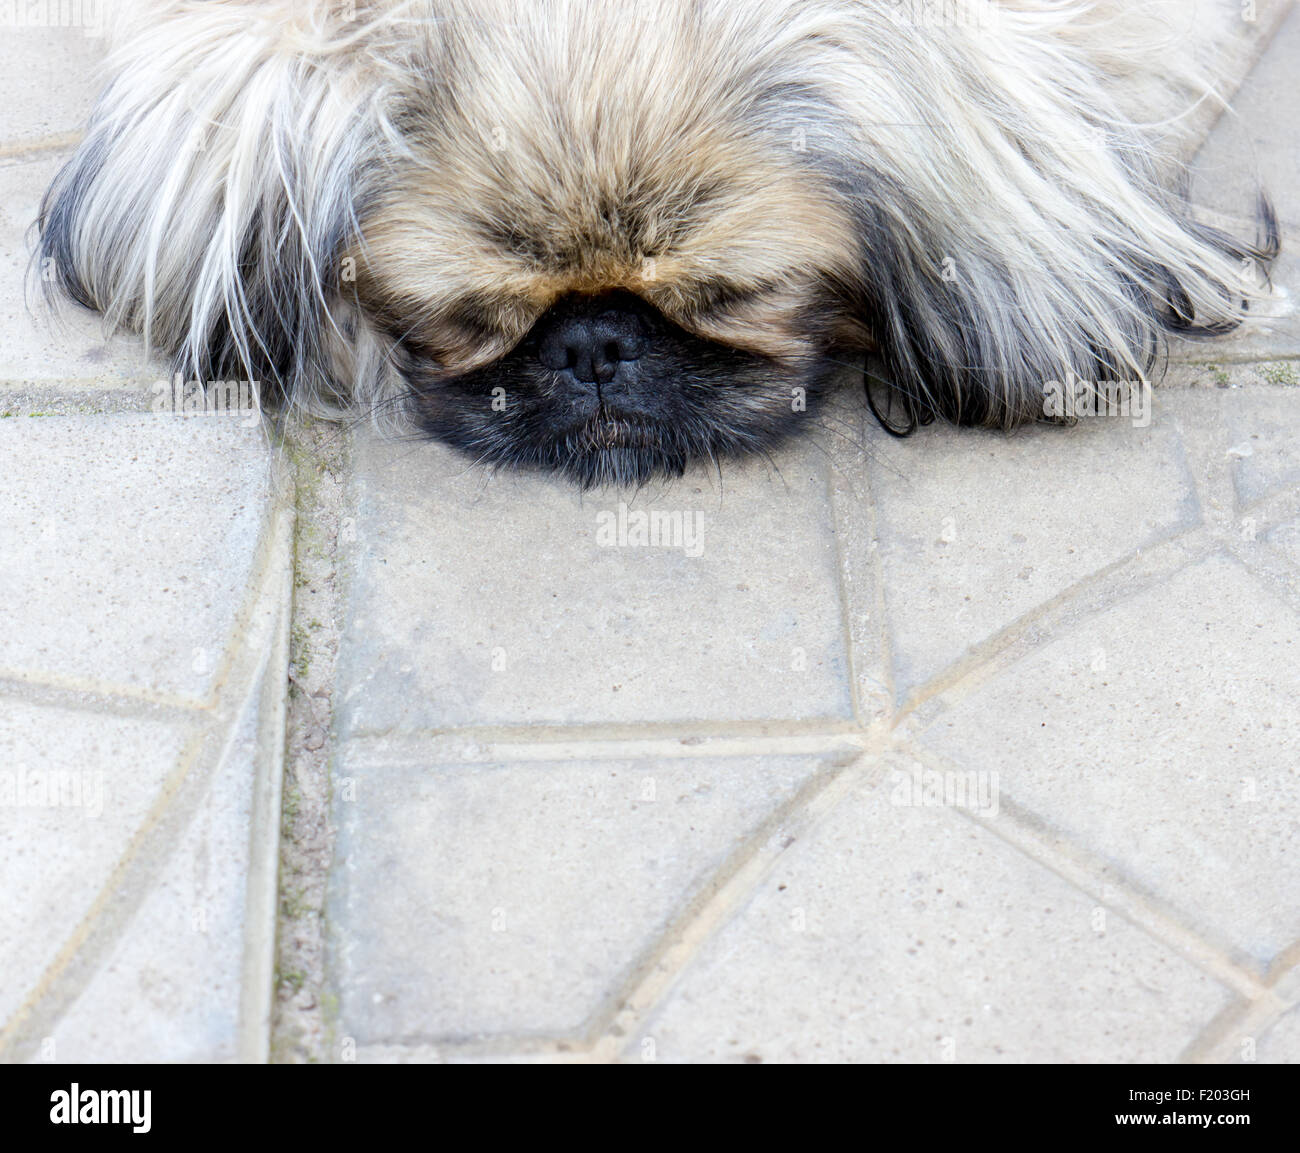 Pekinese dog. Stock Photo